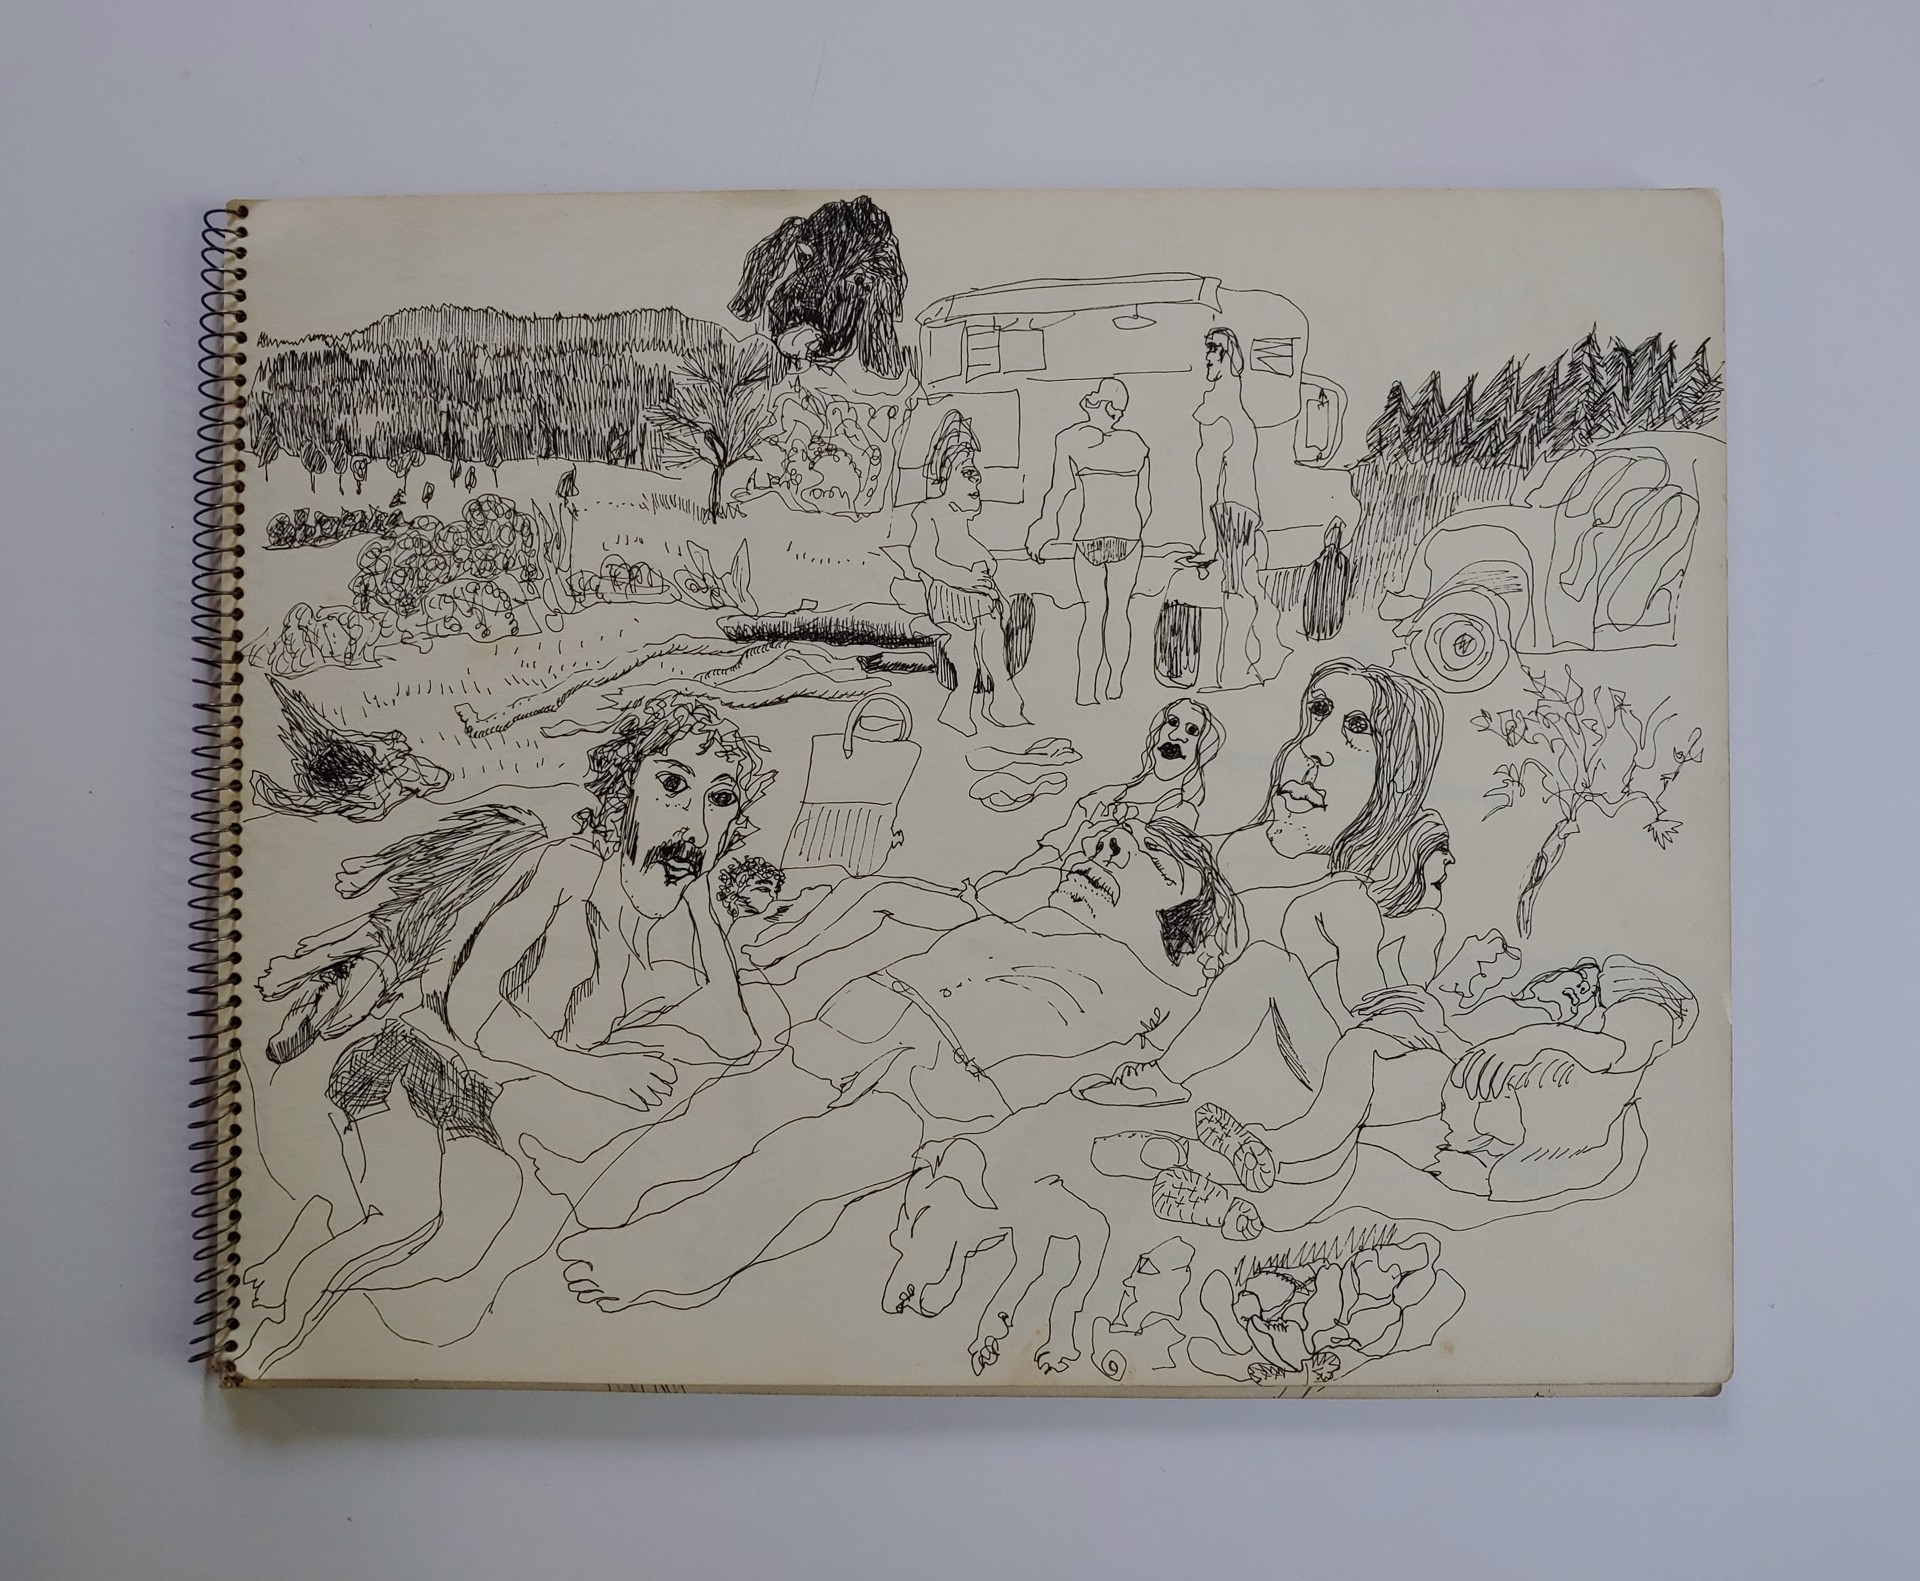 California, June 1973 Sketchbook by David Amdur